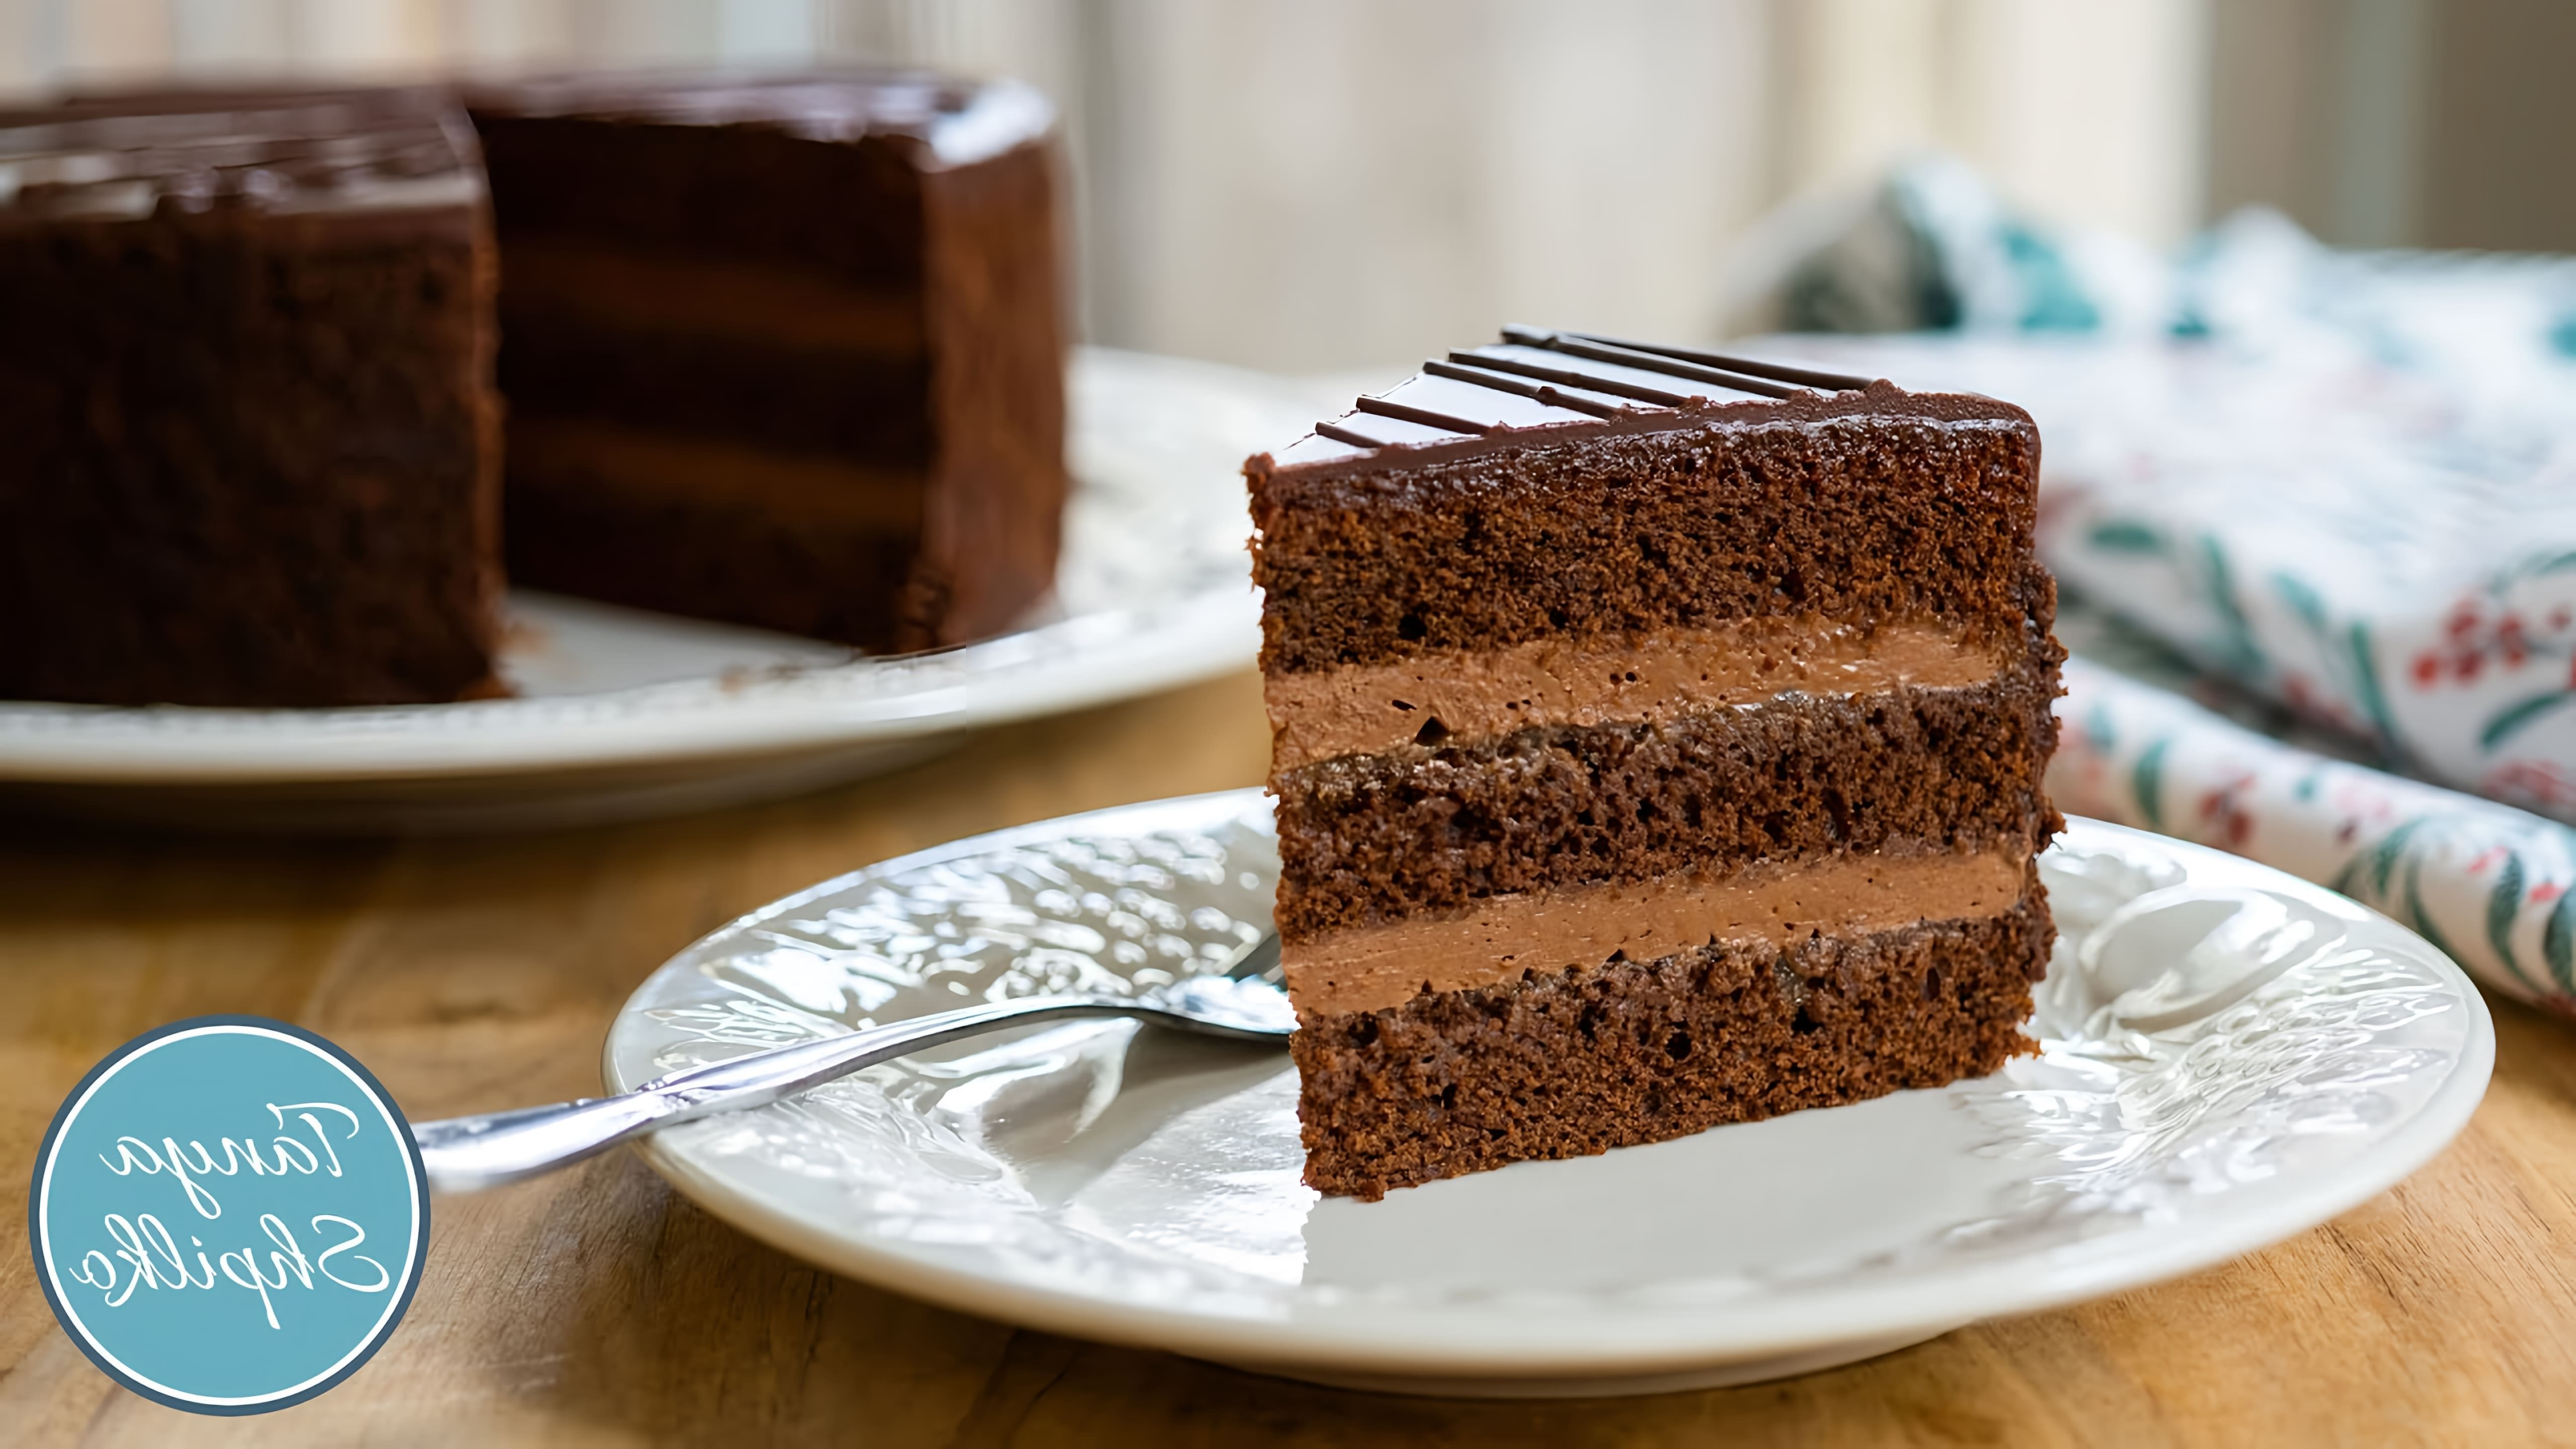 В этом видео демонстрируется рецепт шоколадного торта Прага